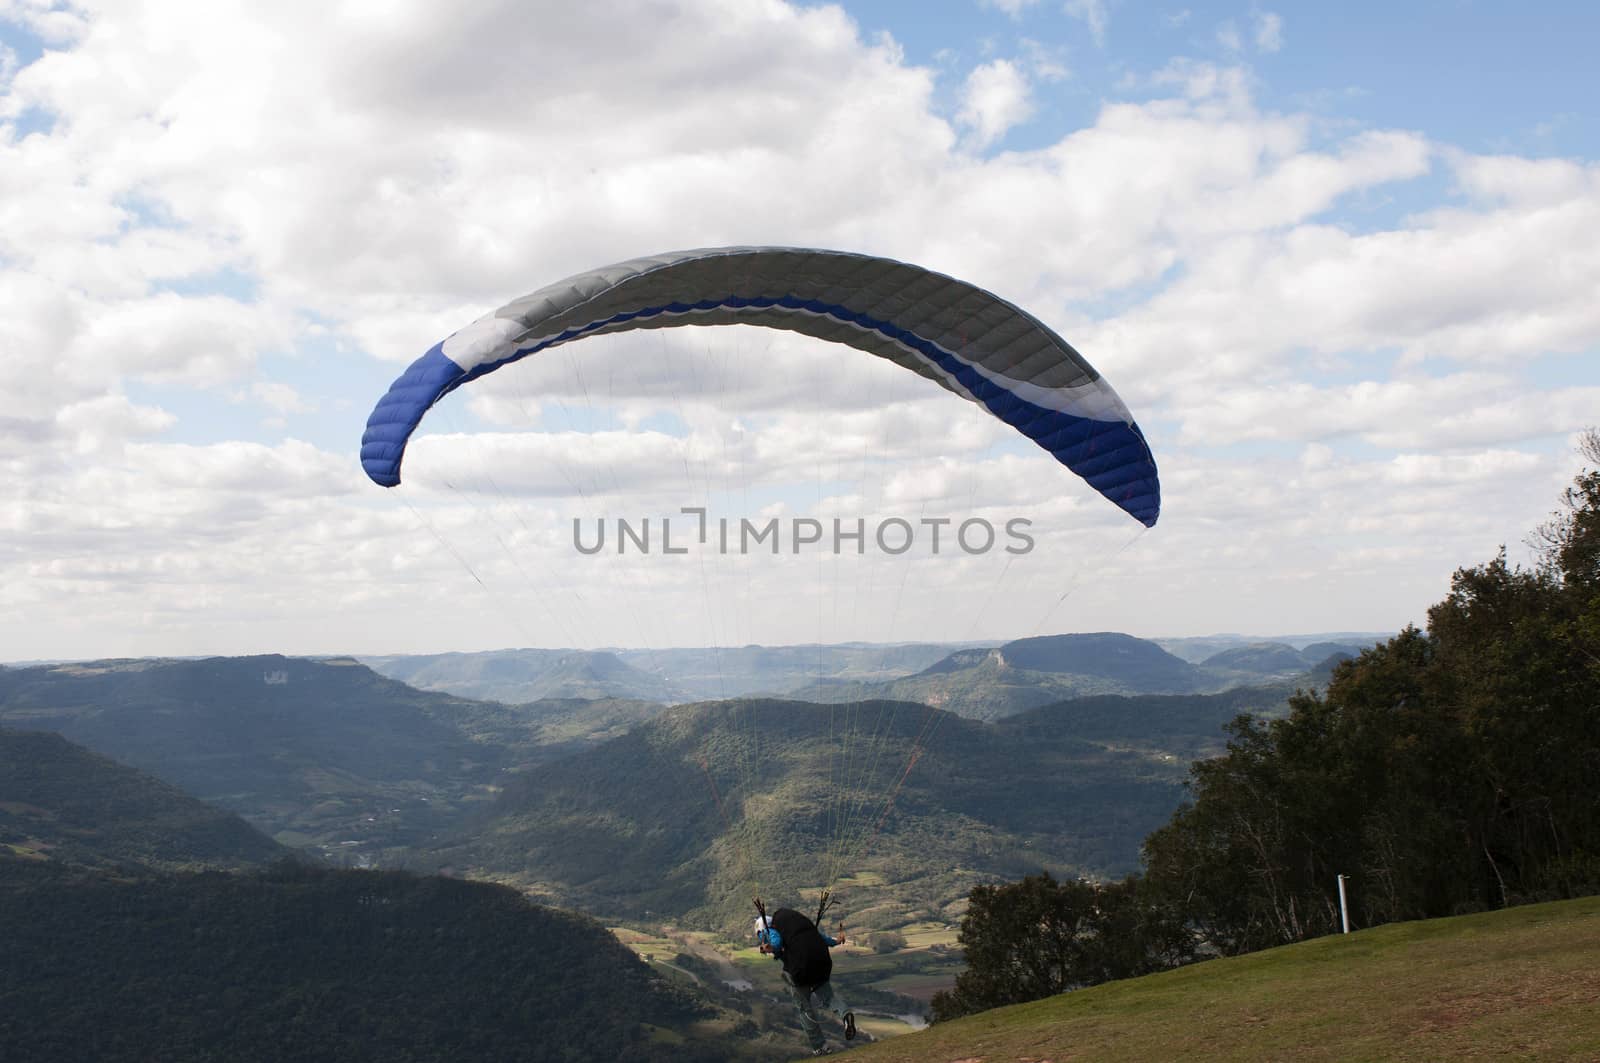 Taking off on Paragliding at Rio Grande do Sul, Brazil by rodrigobellizzi